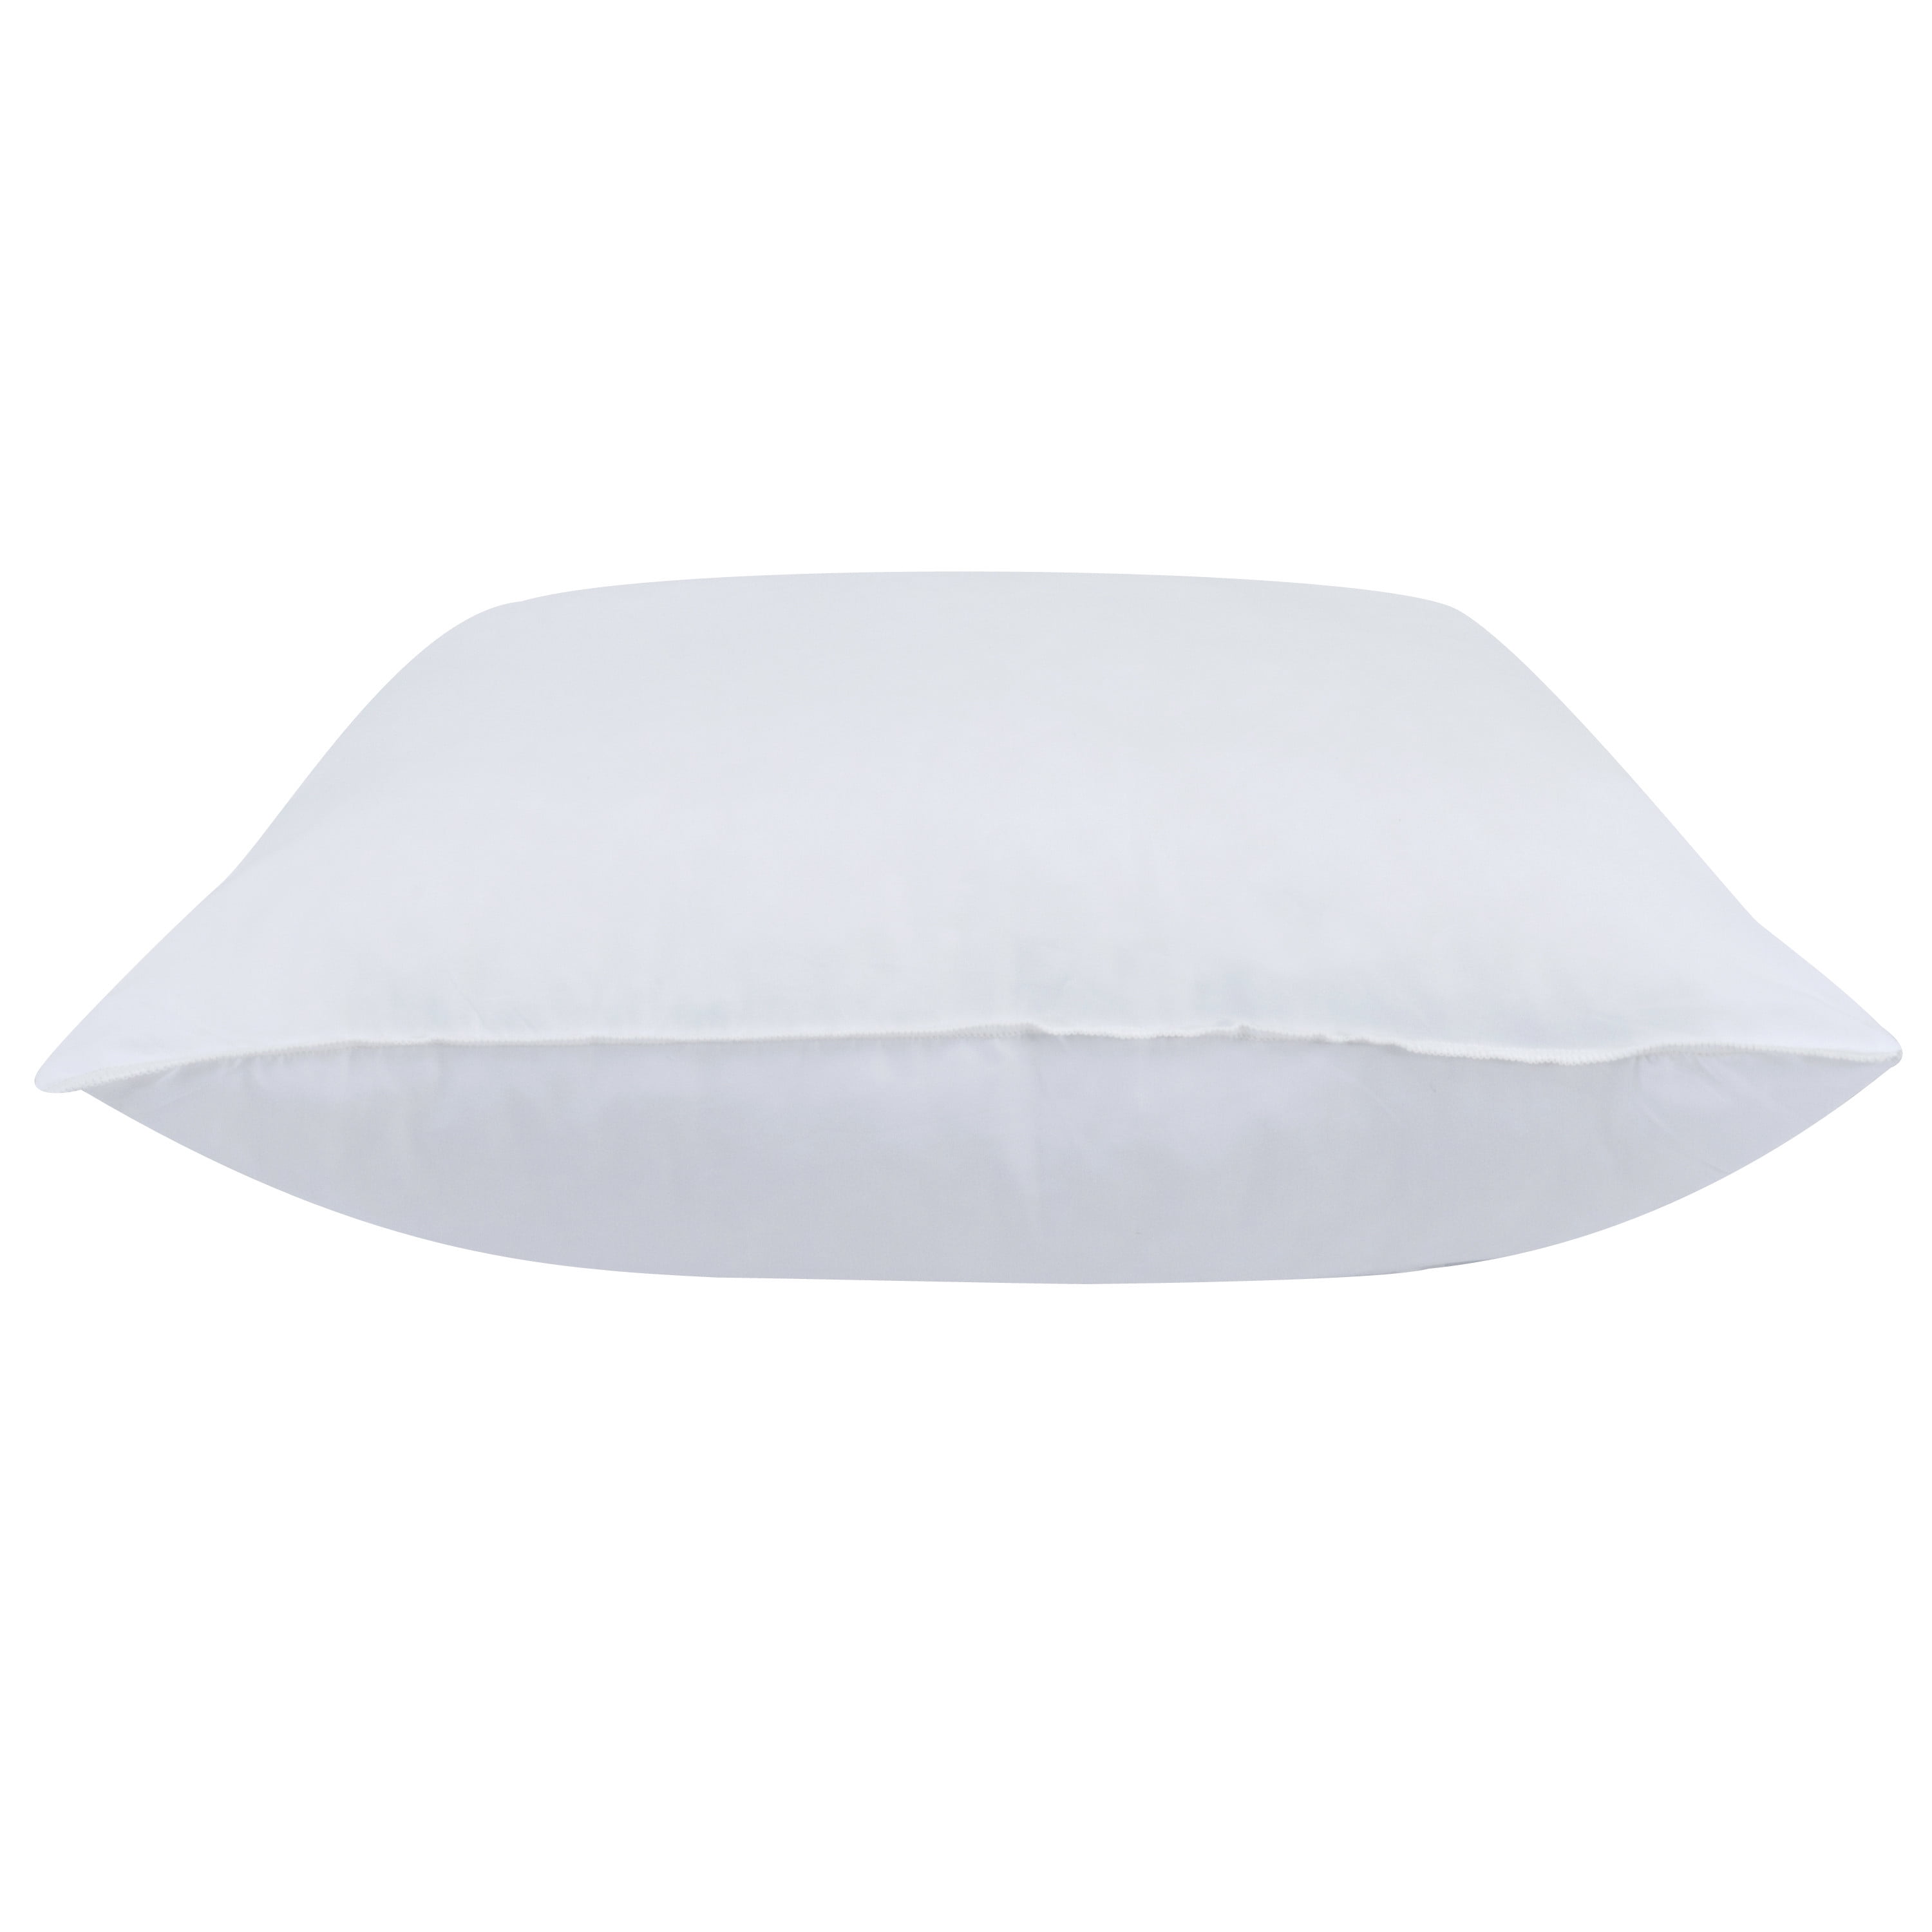 Empyrean Bedding Throw Pillow Insert - Cotton Blend Outer Shell